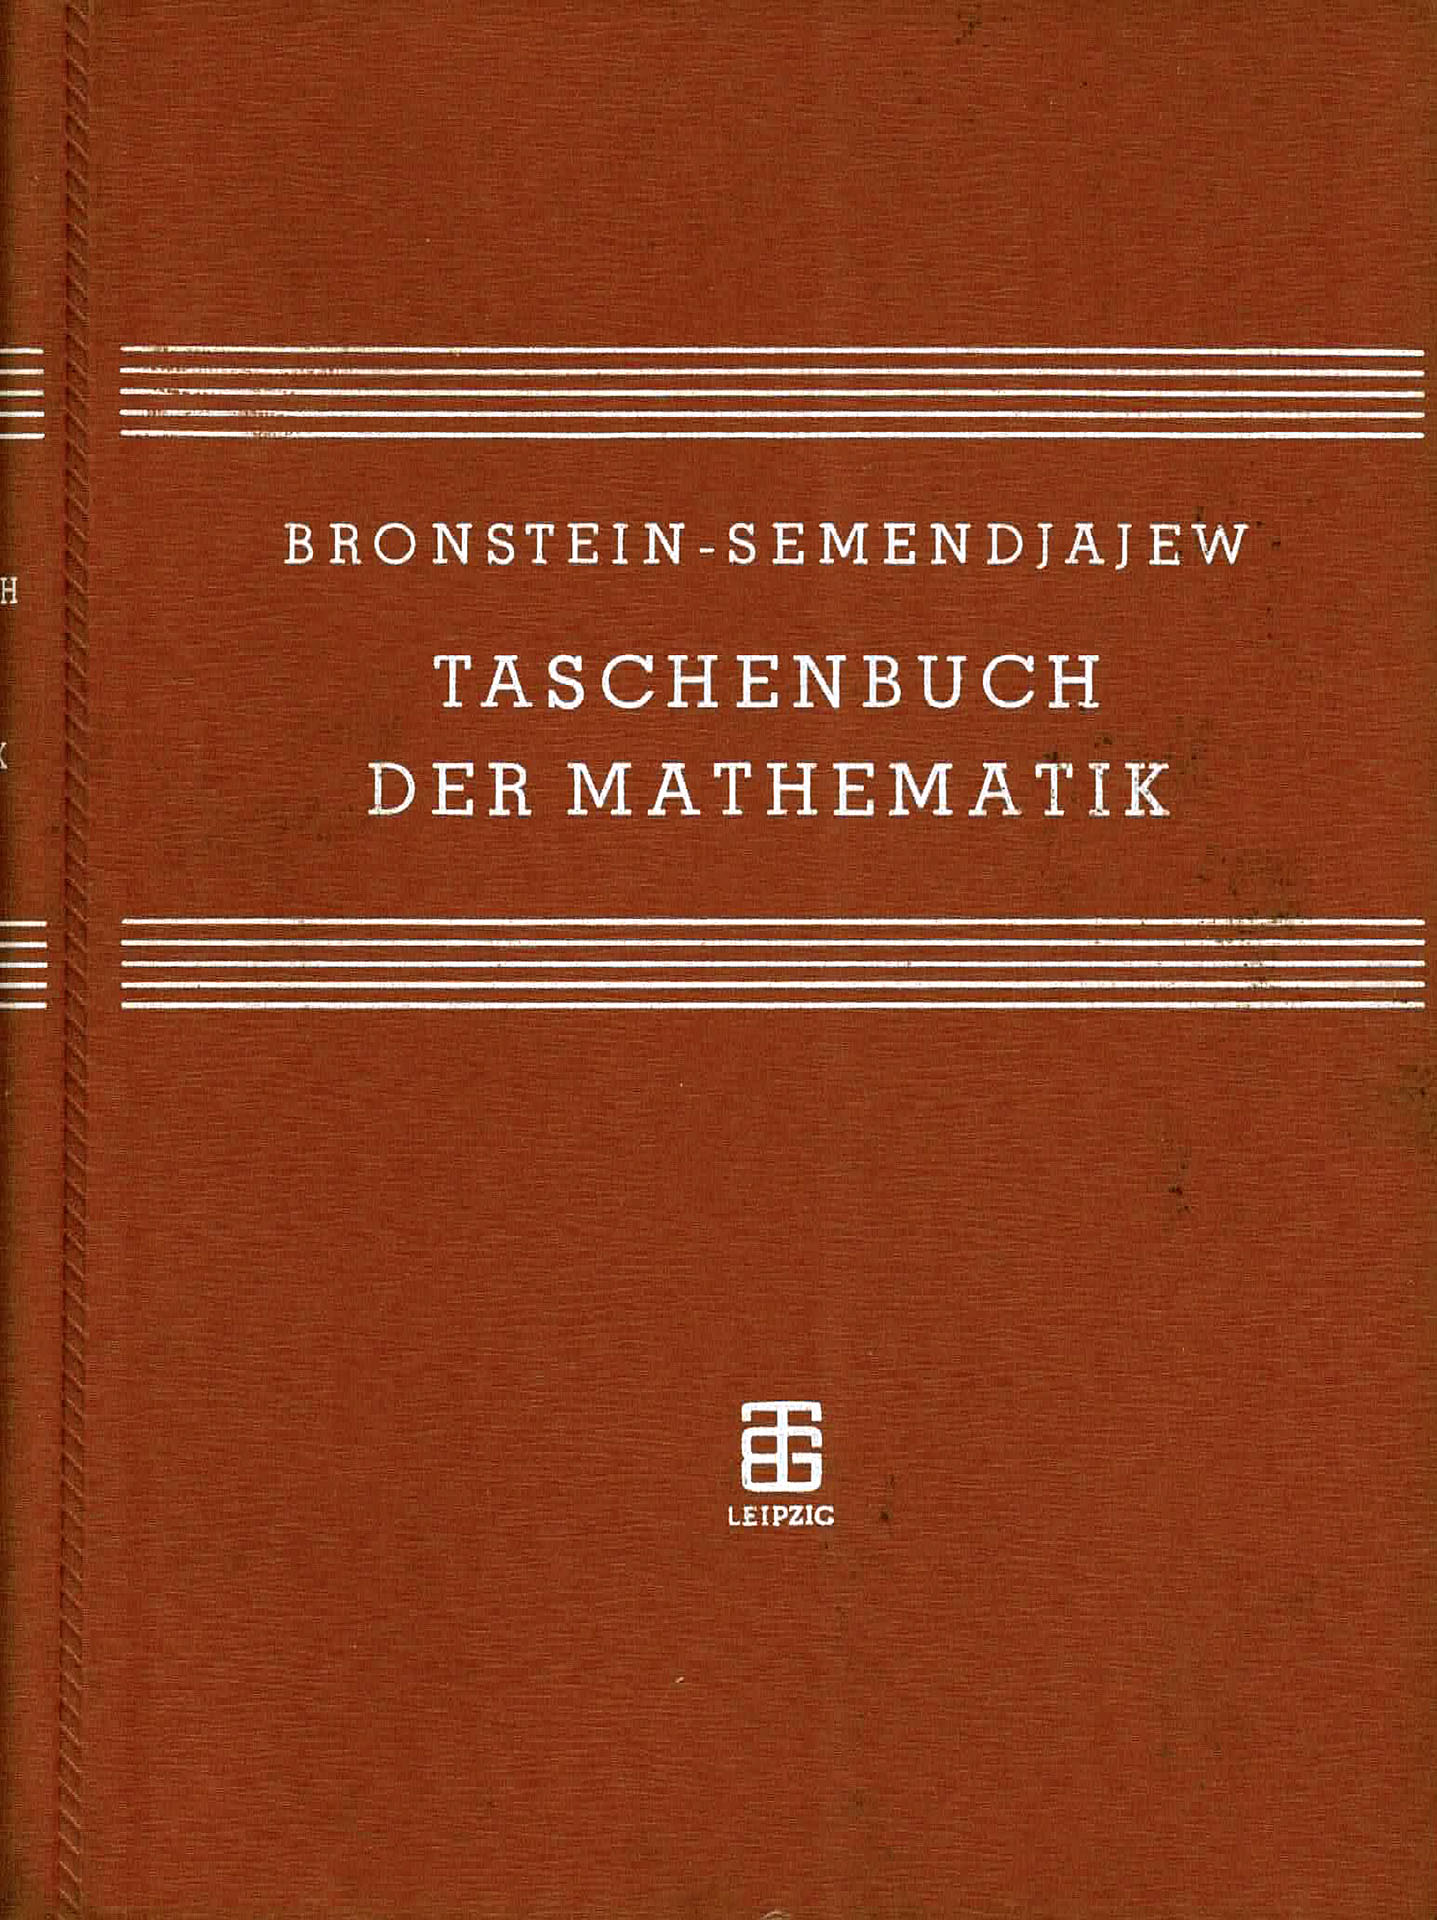 Taschenbuch der Mathematik - Bronstein - Semendiajew